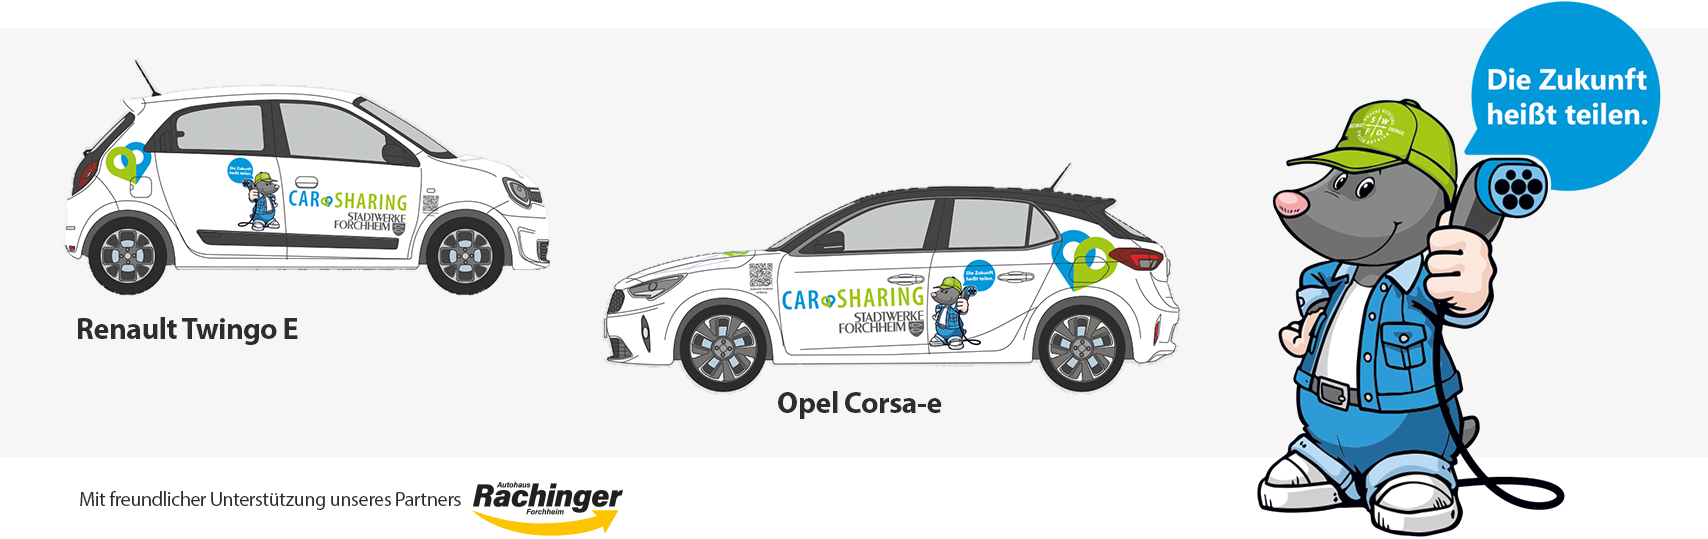 "Die Zukunft heißt teilen" - Toni stellt die E-Fahrzeuge vor: Renault Twingo E und Opel-Astra-e